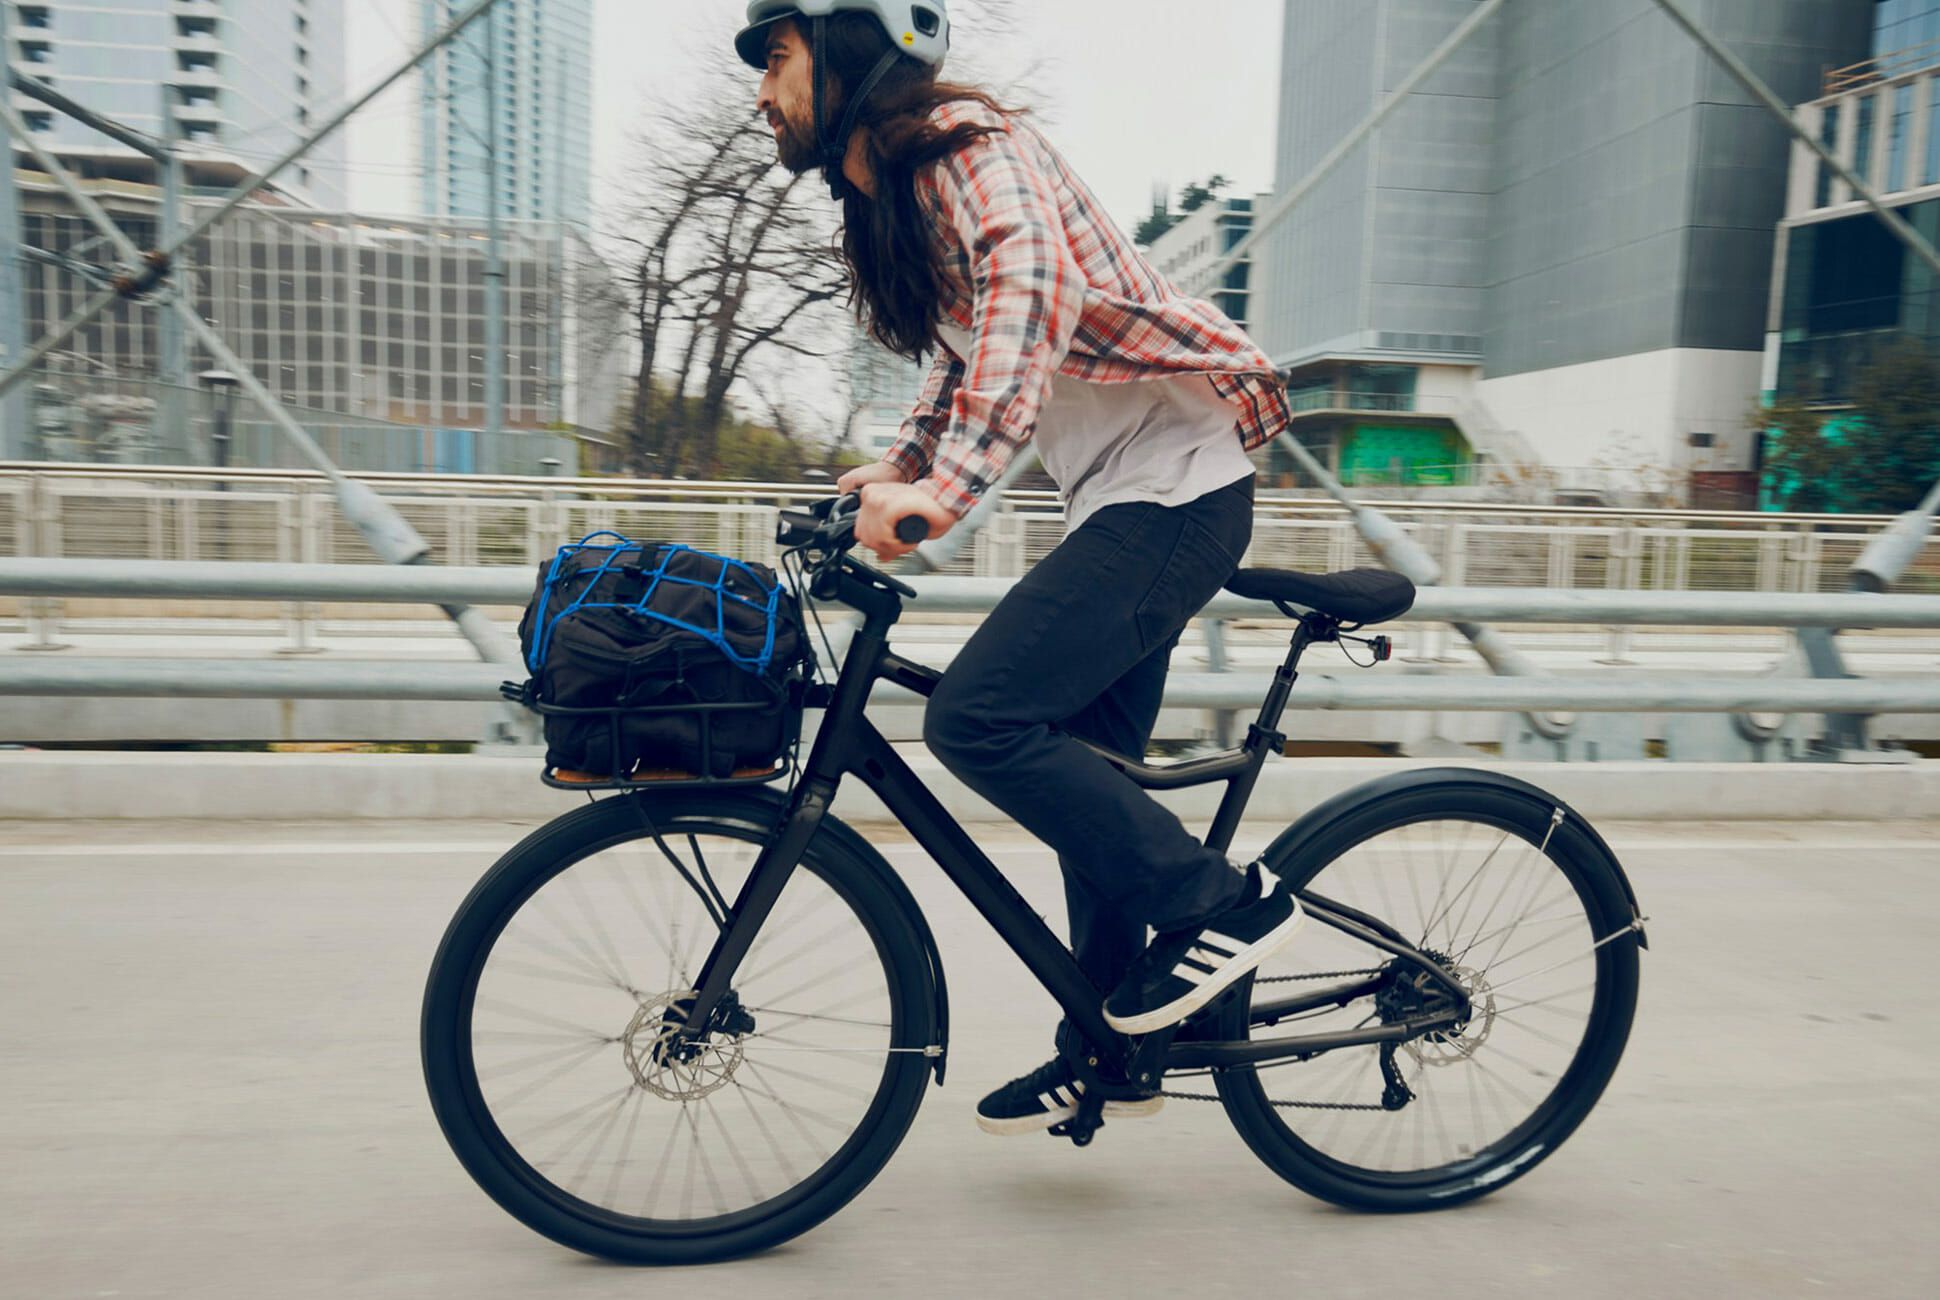 inexpensive city bikes